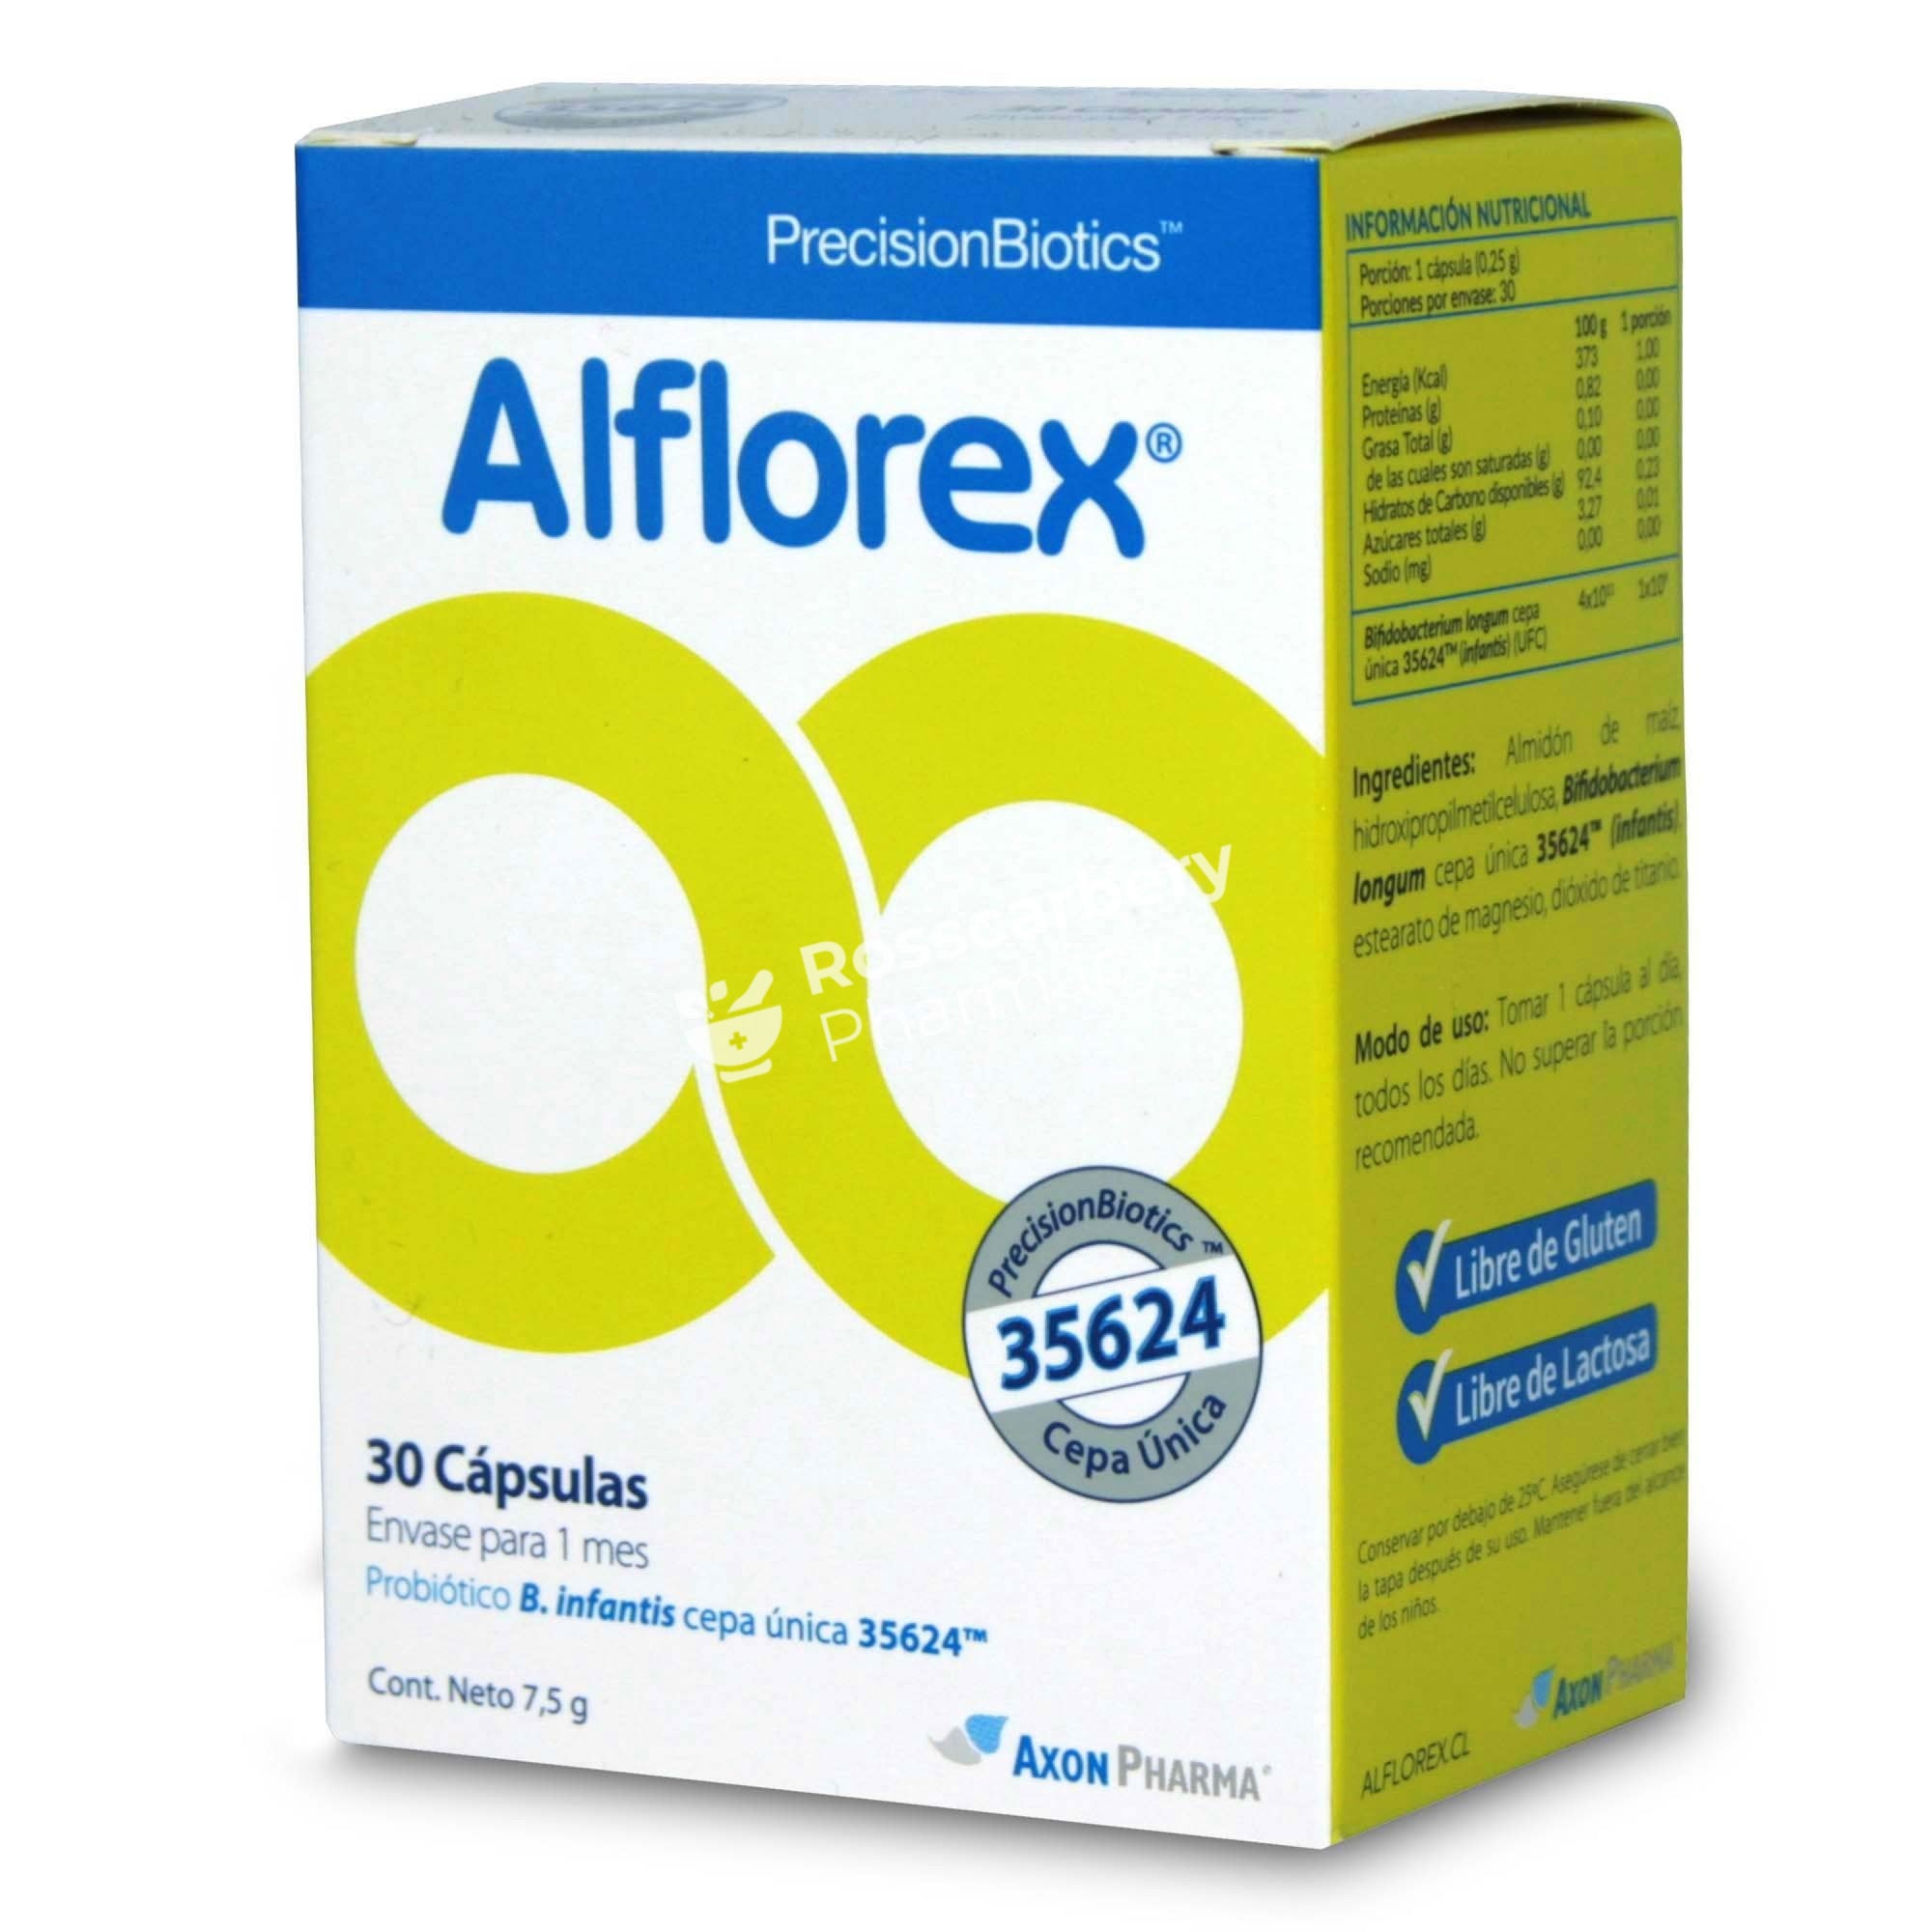 Alflorex Capsules - Precisionbiotics Probiotics & Digestive Health